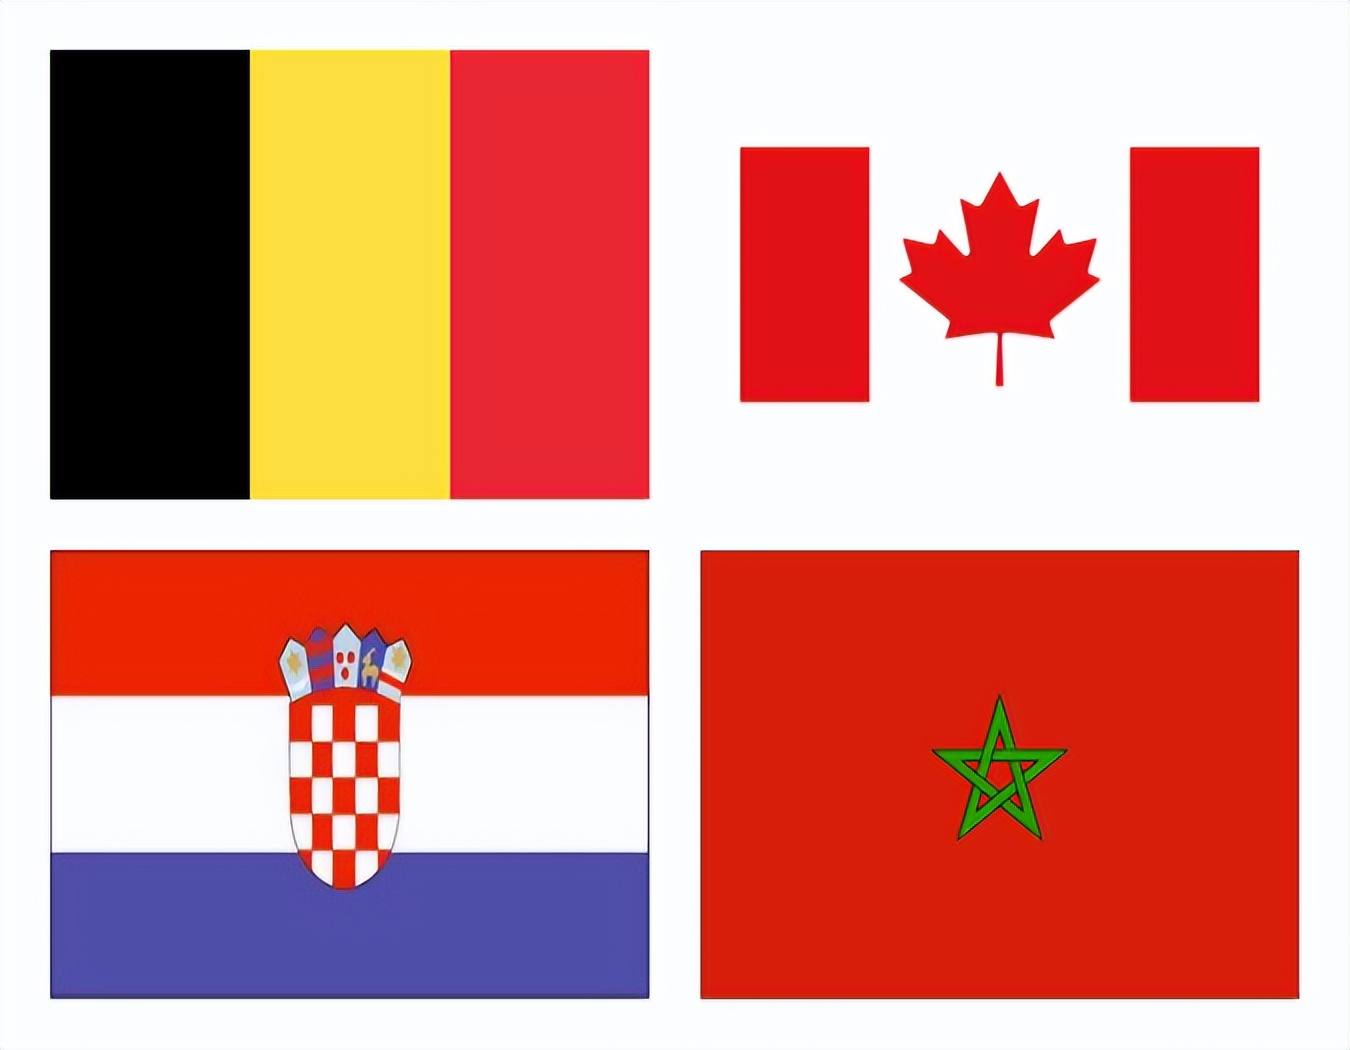 加拿大摩洛哥鏖战欧洲双雄(欧洲红魔比利时、北美新贵加拿大、北非浪子摩洛哥前亚军克罗地亚)